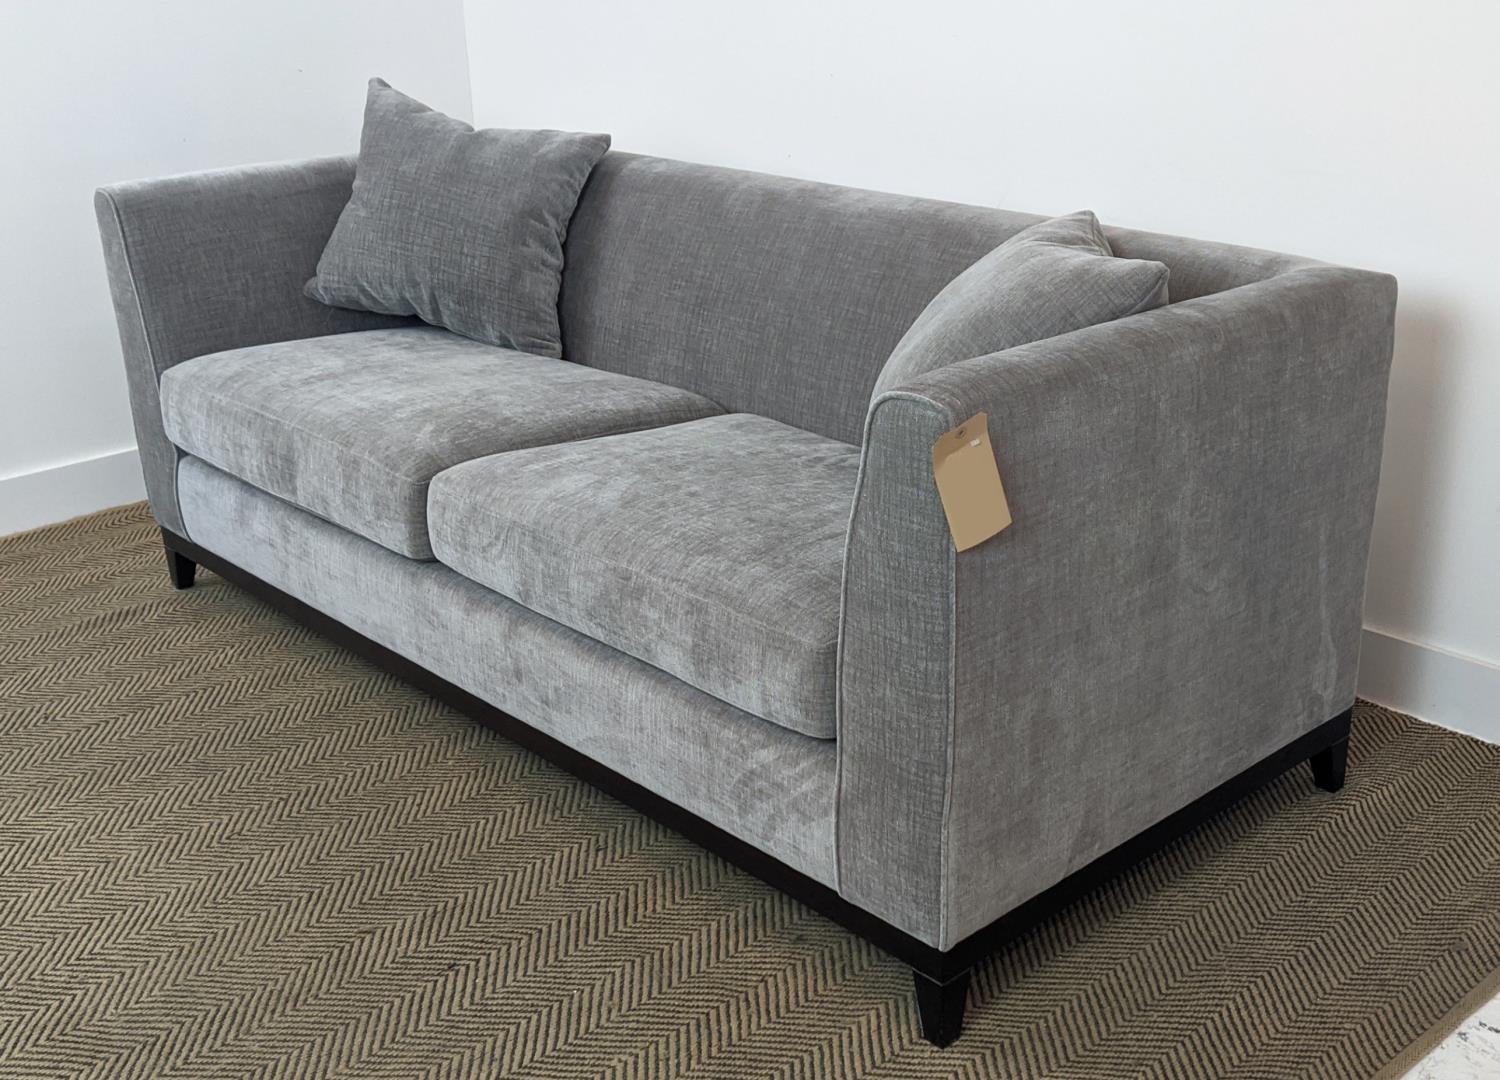 SOFA, dark grey upholstered, ebonised supports, 200cm x 85cm x 90cm. - Image 4 of 7